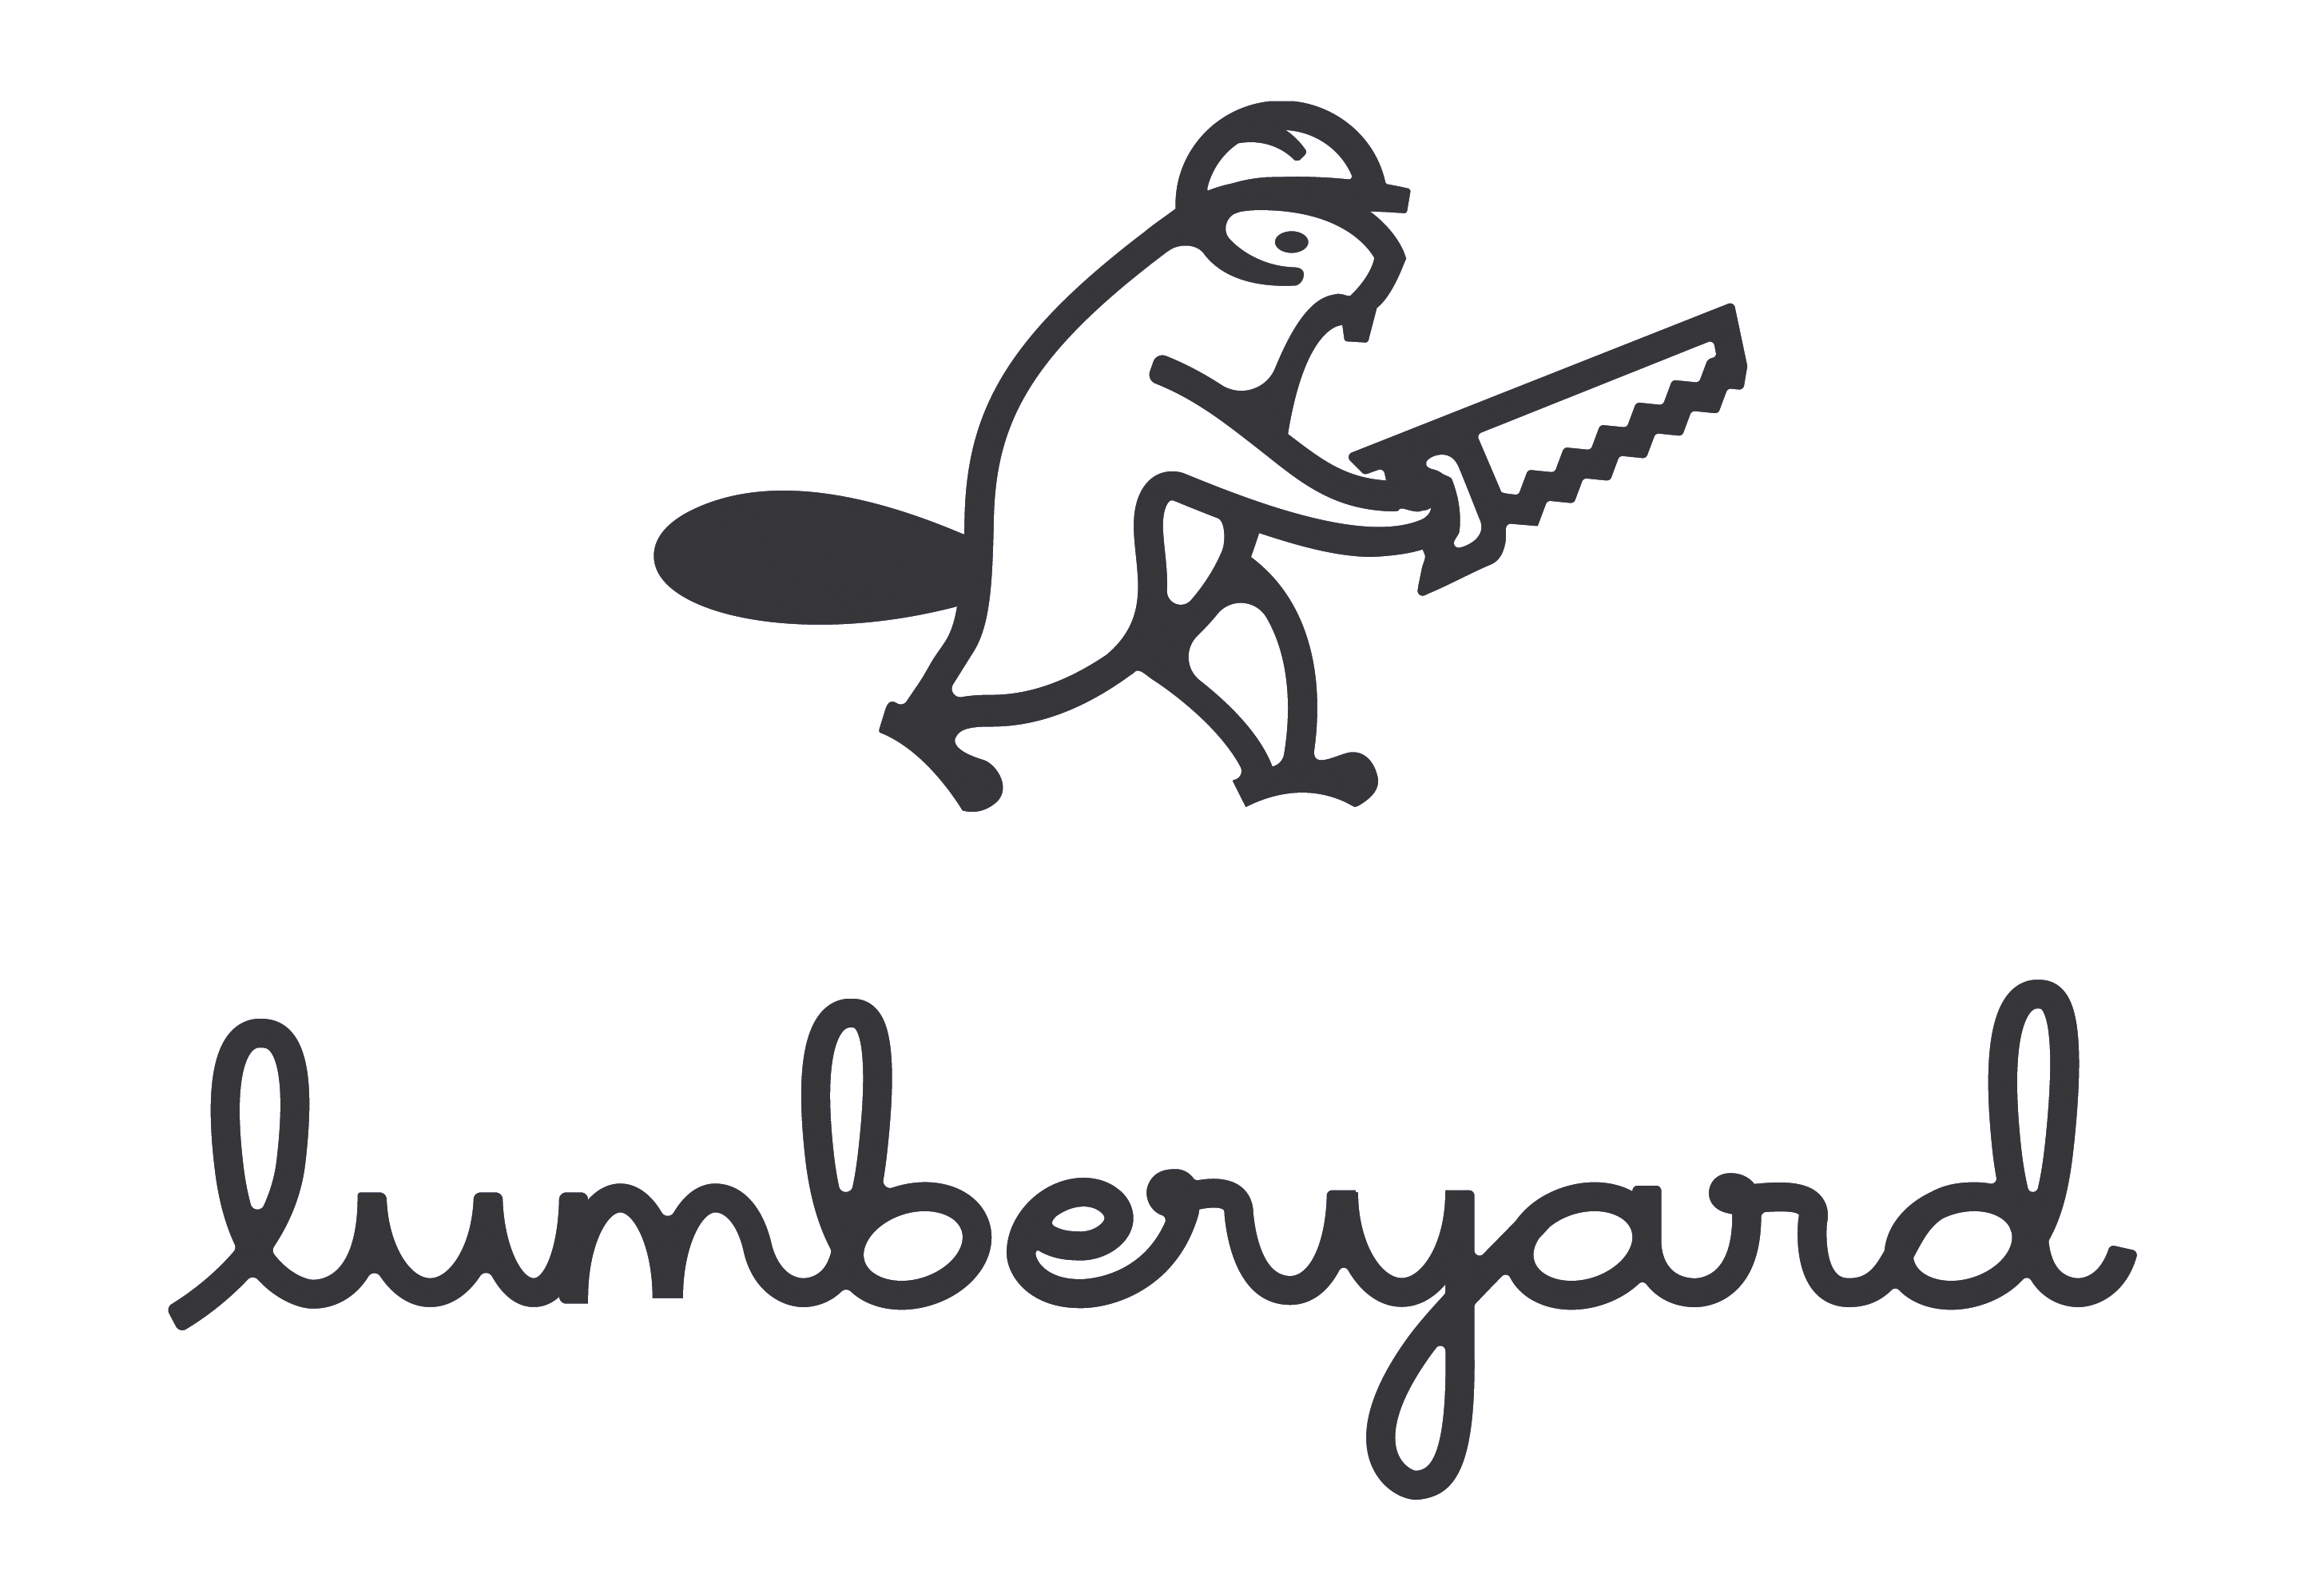 History Lumberyard. u201c